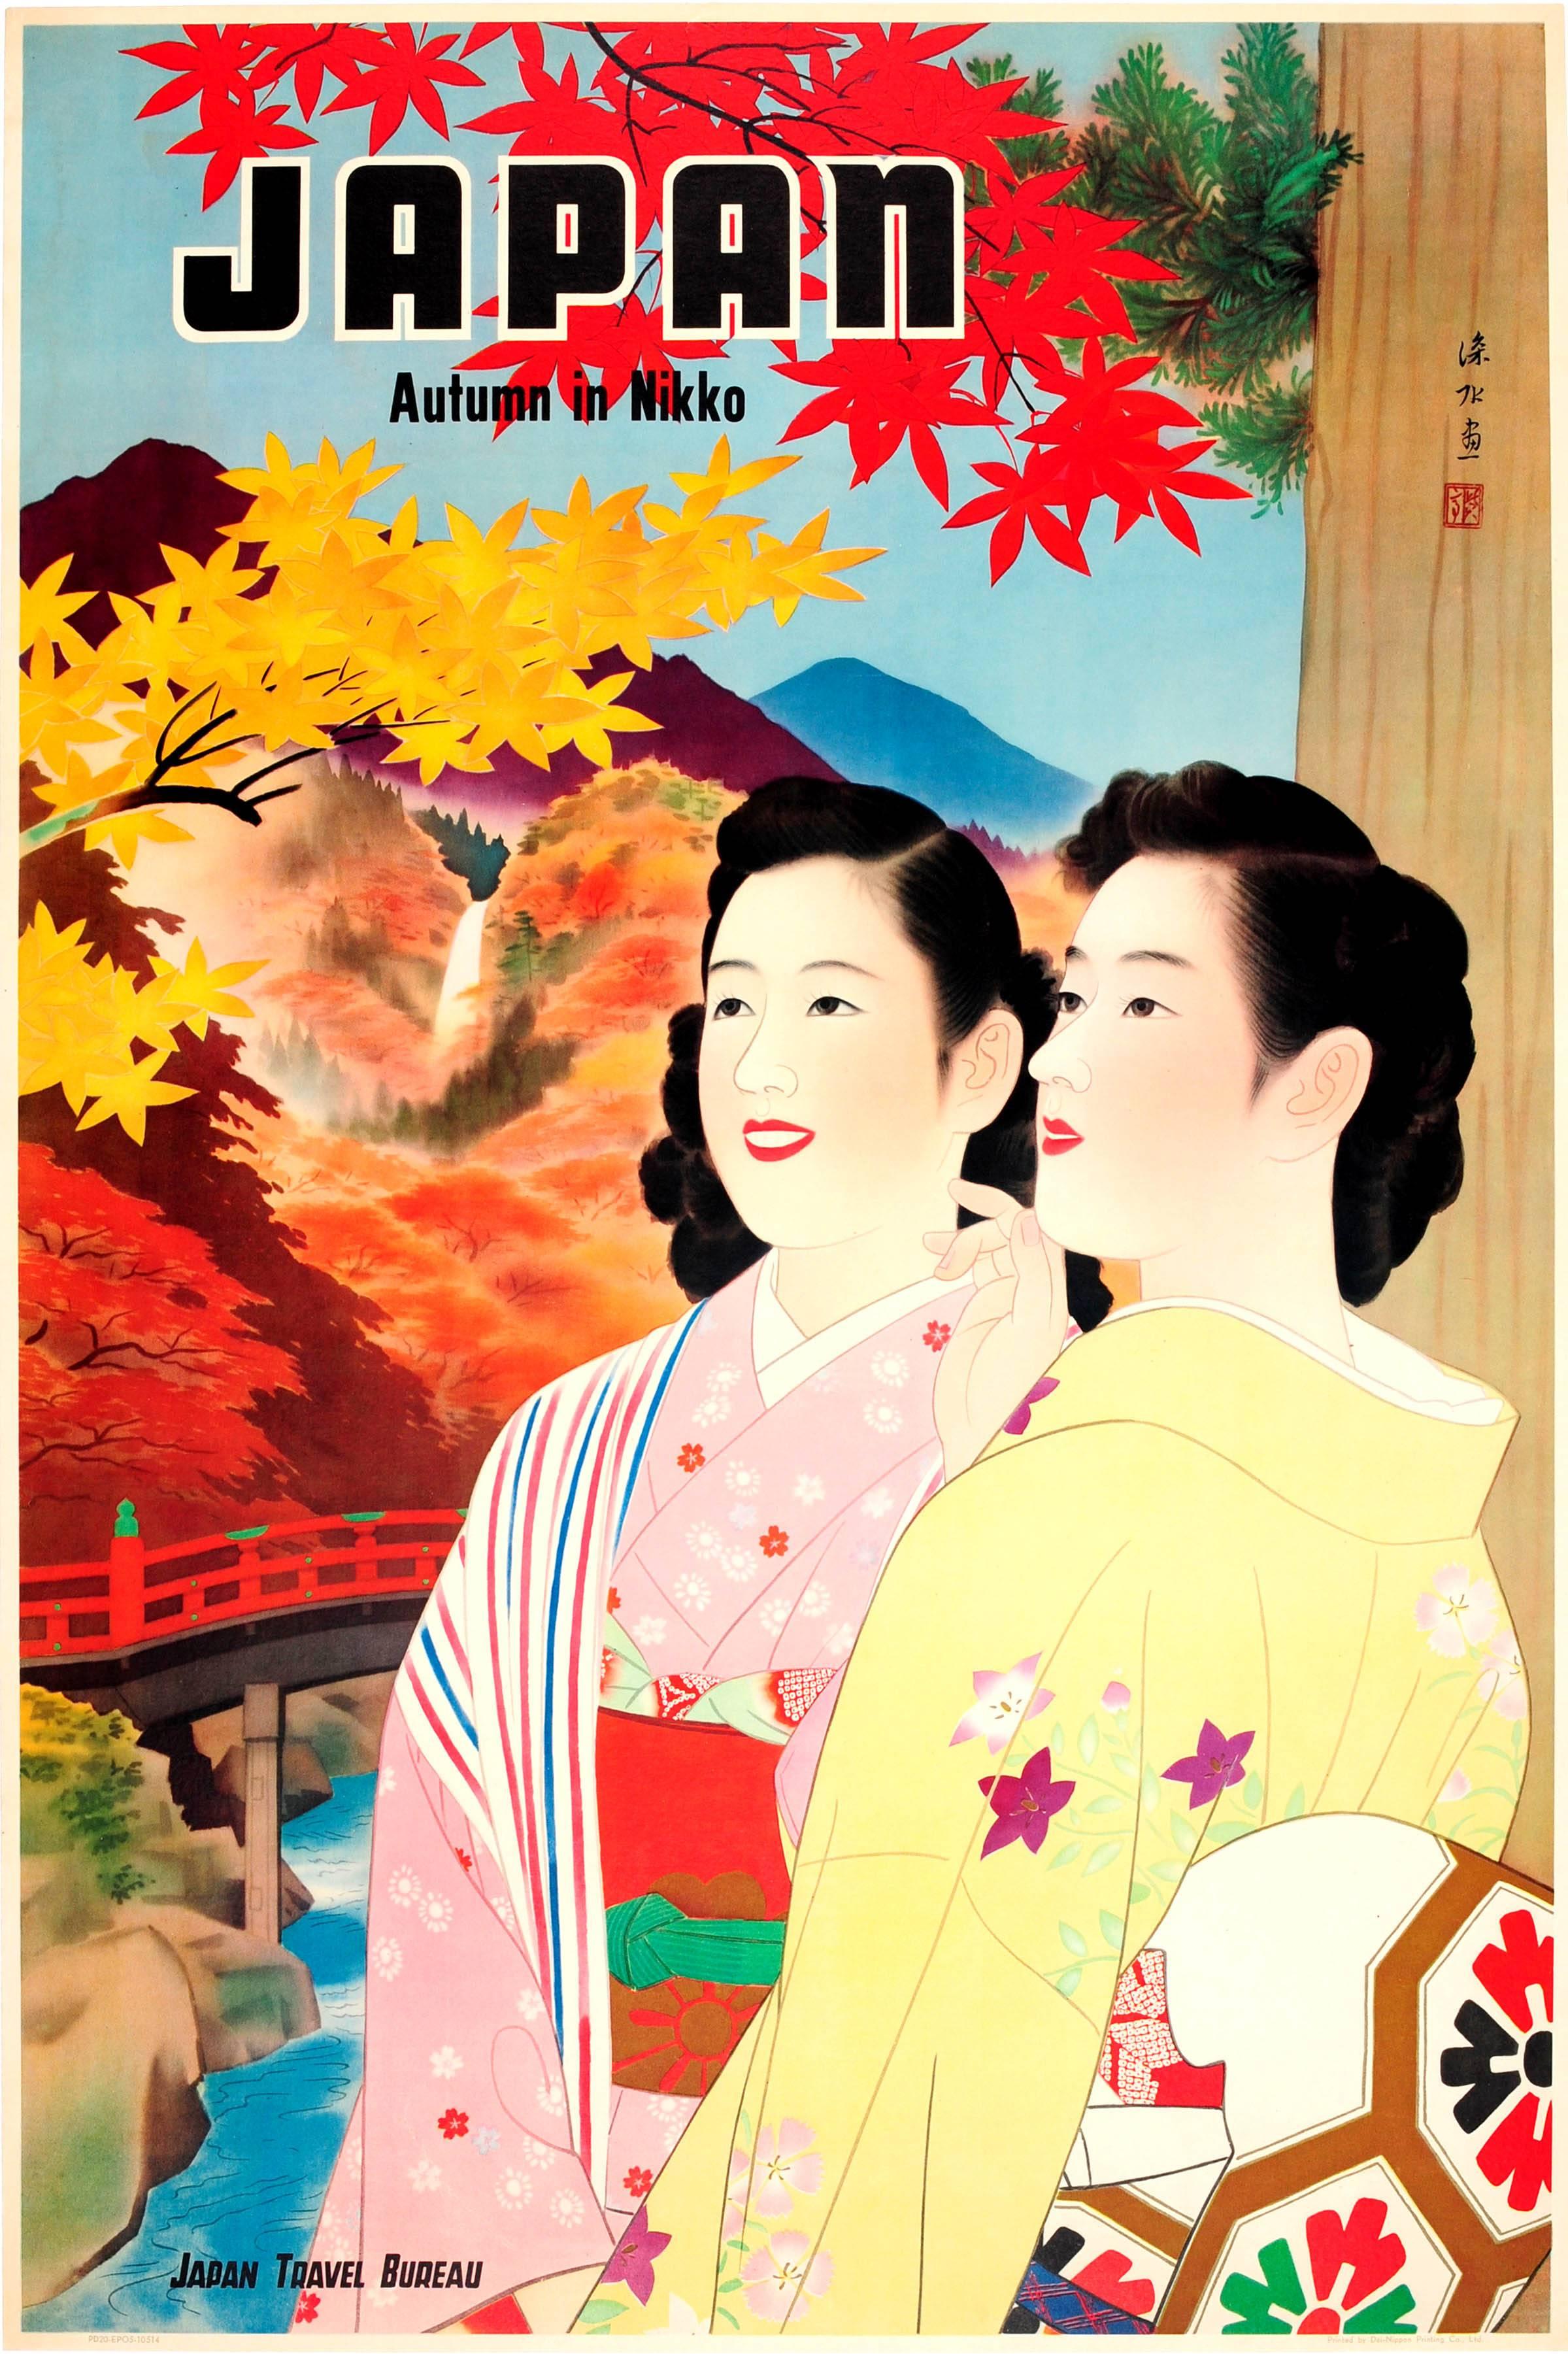 Unknown Print – Original Vintage-Reise-Werbeplakat für Japan – Herbst in Nikko, 1930er Jahre